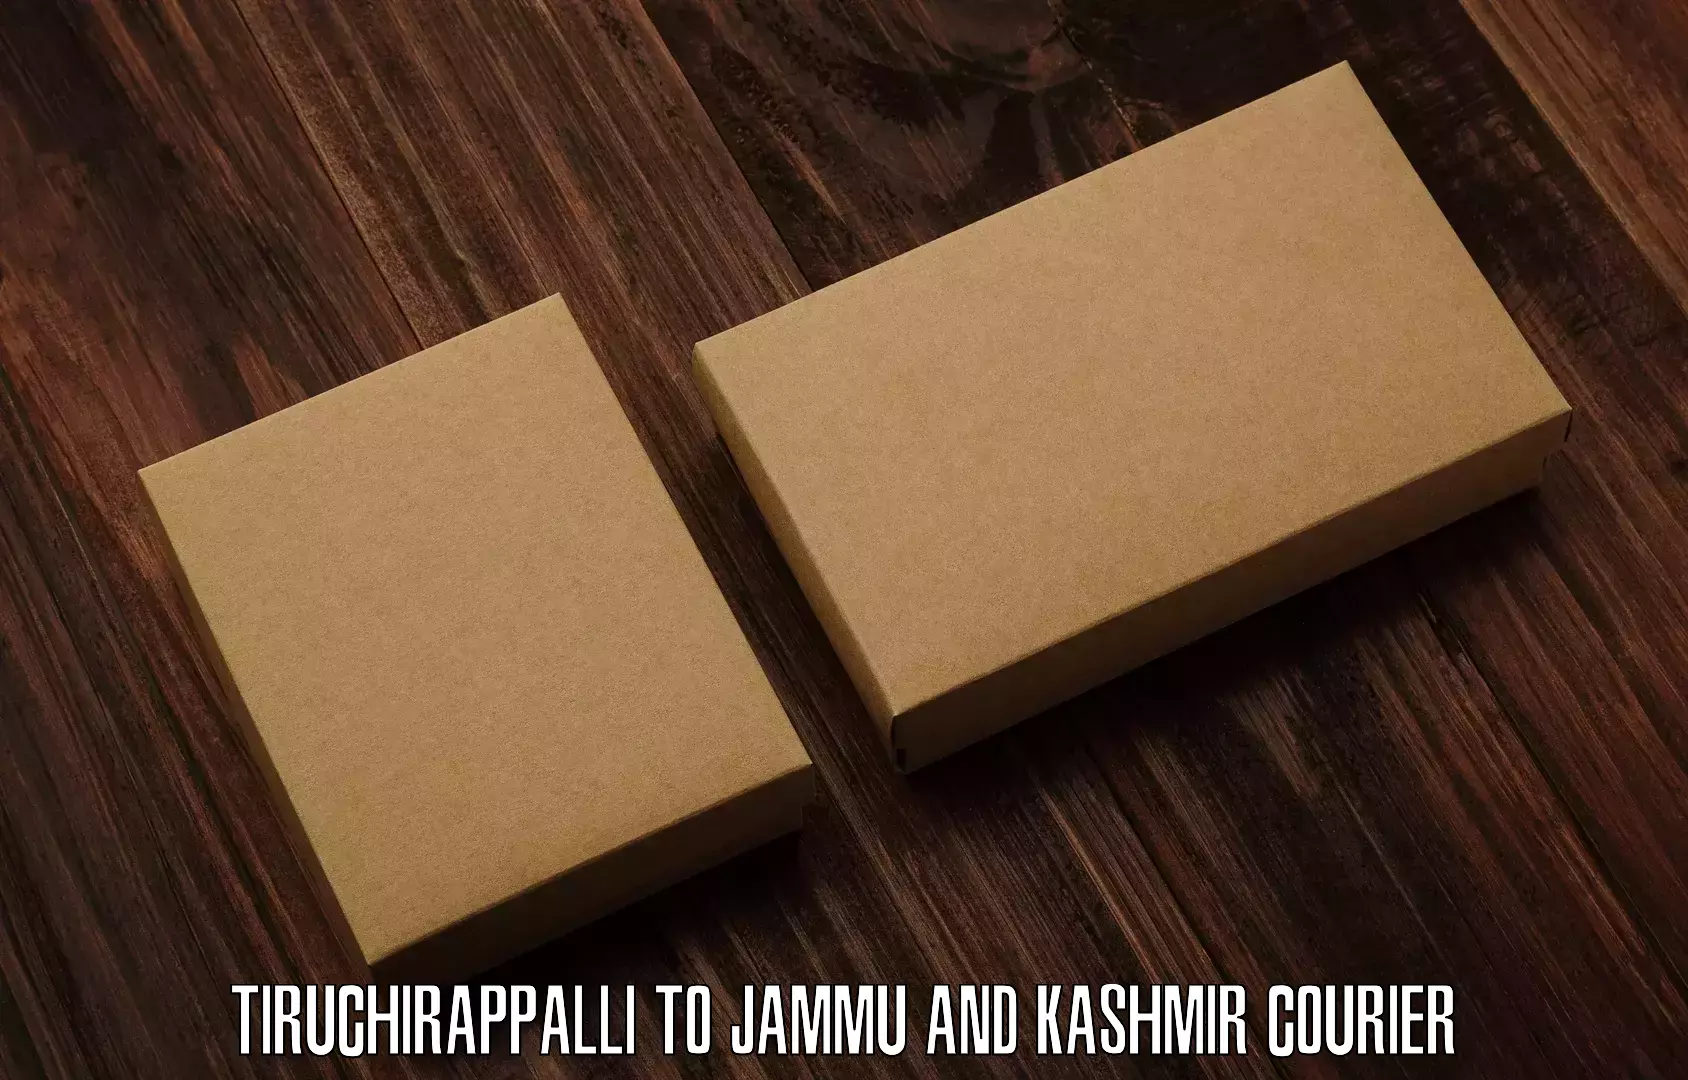 Express logistics providers in Tiruchirappalli to Srinagar Kashmir